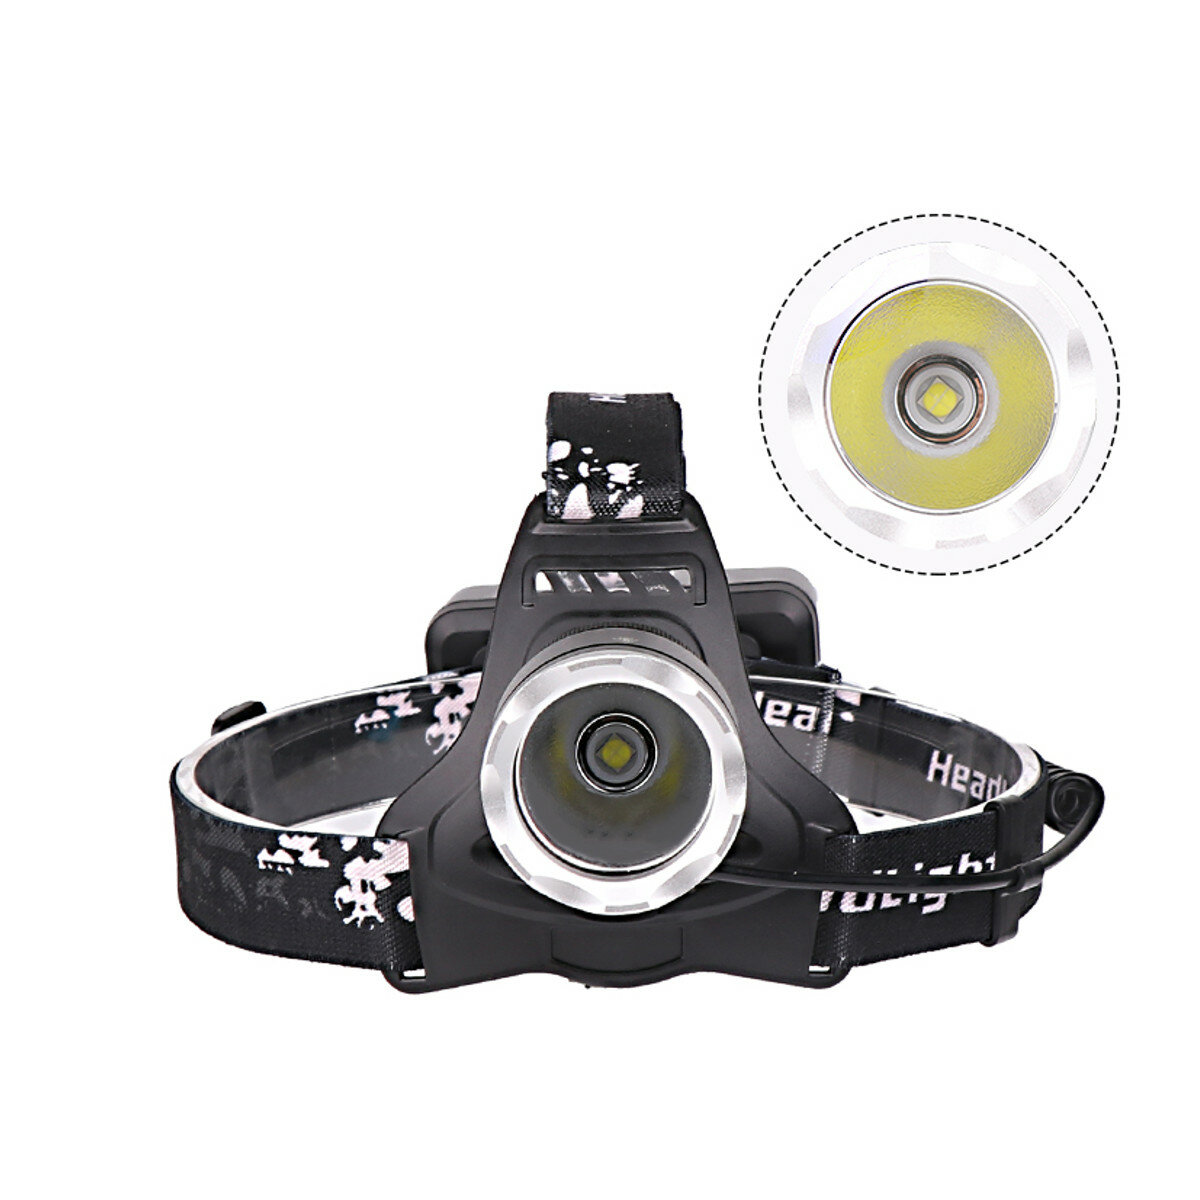 XANES XHP50 LED Linterna frontal 4 modos IPX-6 Impermeable Luz de trabajo recargable USB cámping pesca Ciclismo